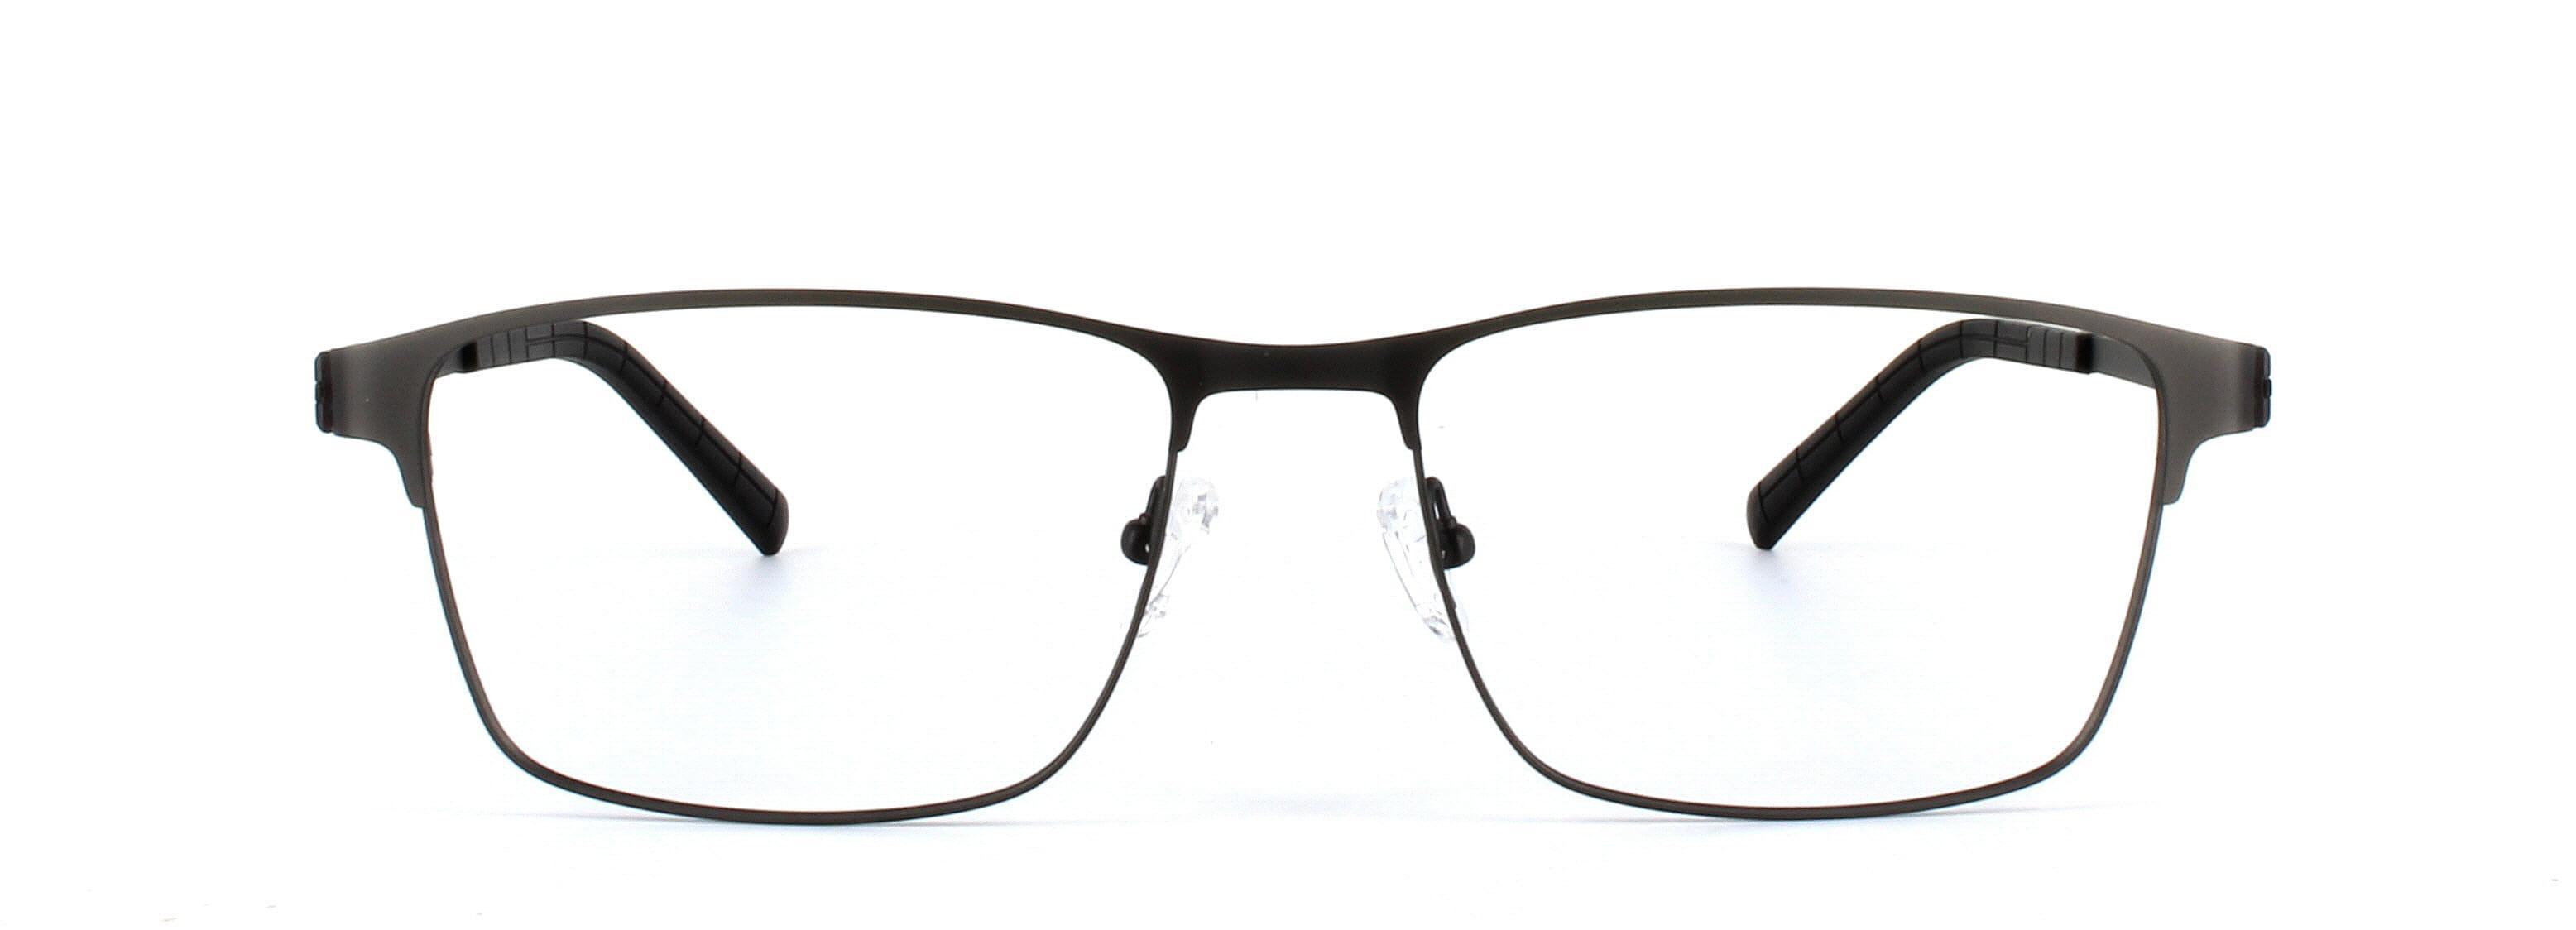 Divo Matt Black Full Rim Square Titanium Glasses - Image View 5